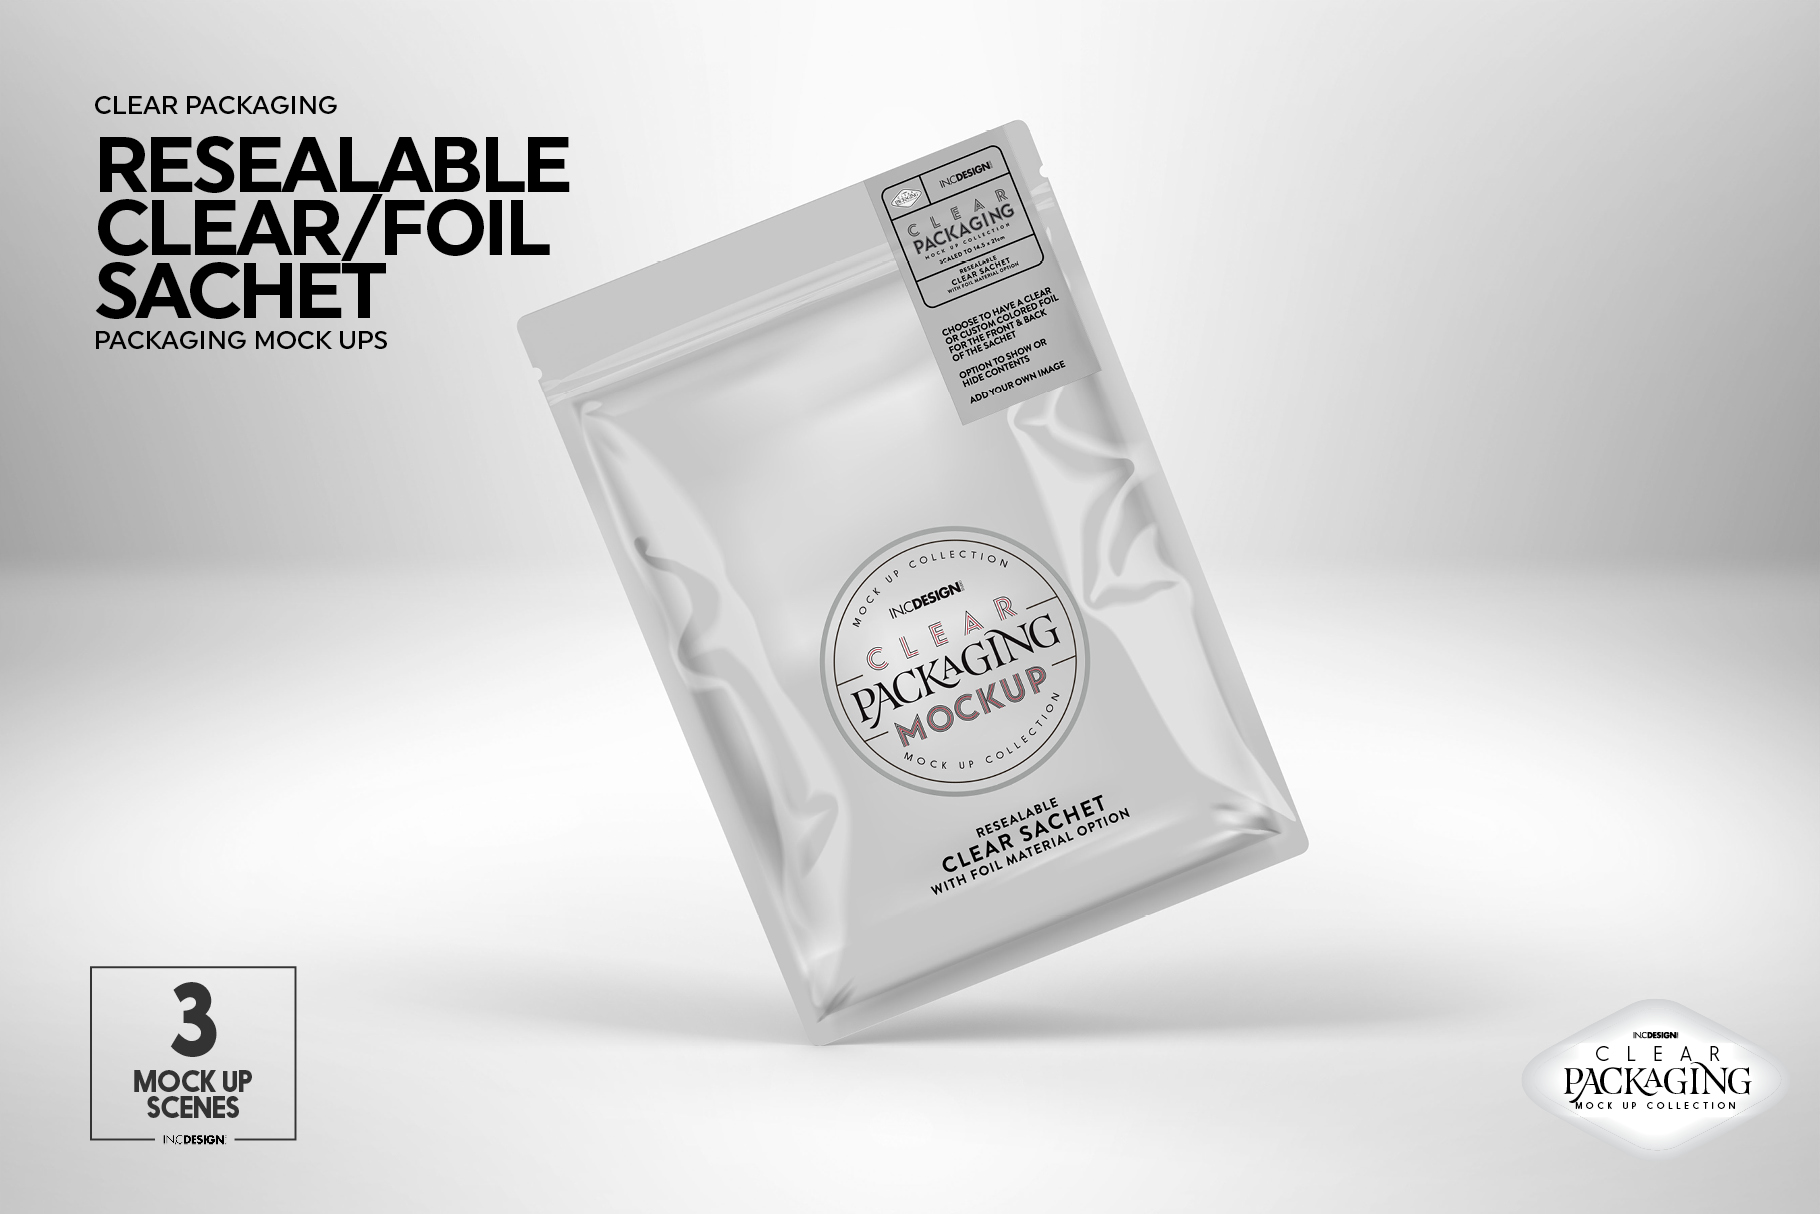 Download Clear Foil Sachet Packaging Mockup (161940) | Branding | Design Bundles